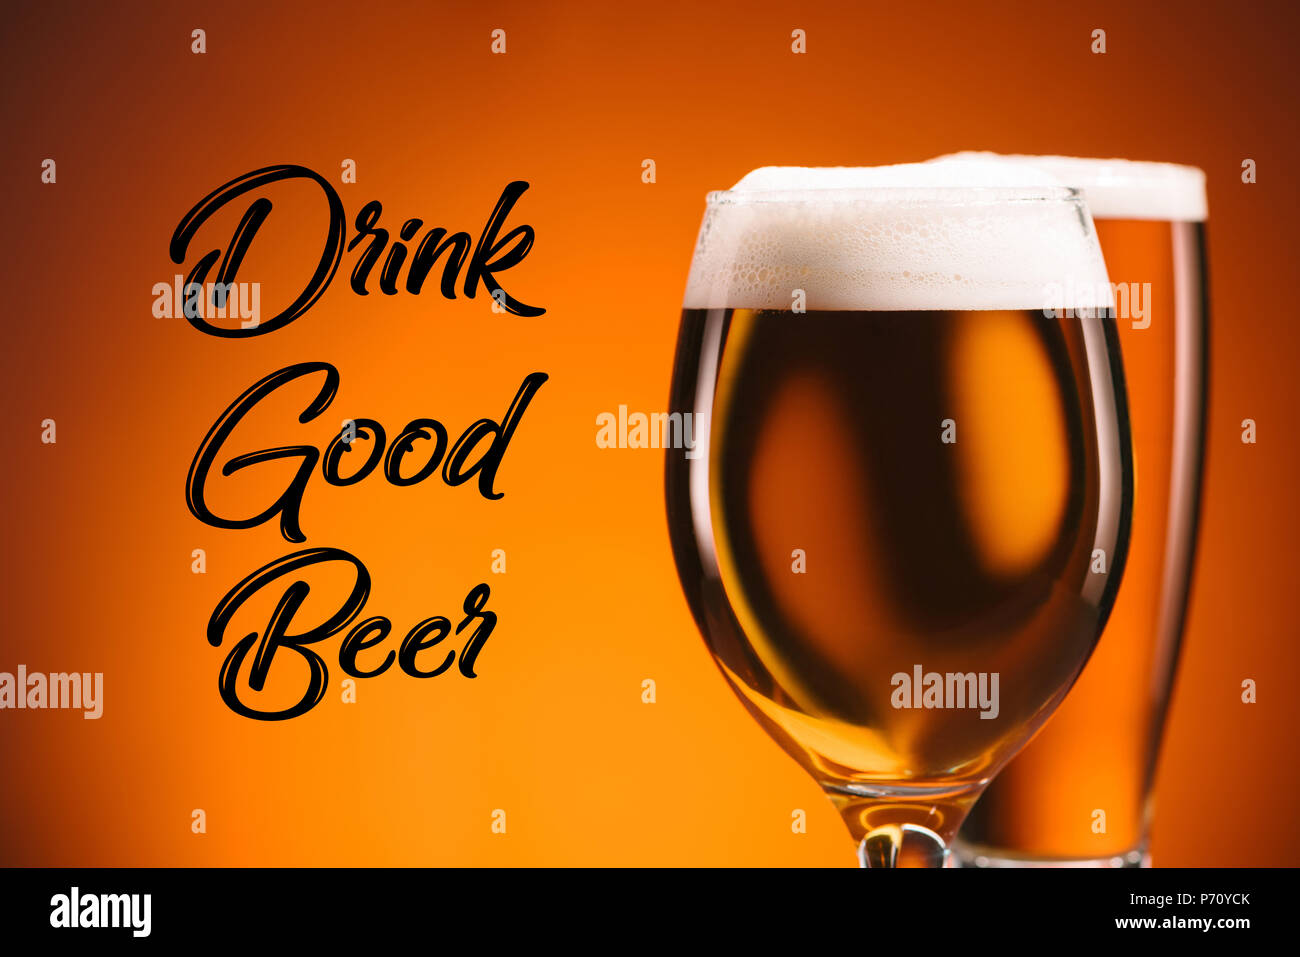 Nahaufnahme Blick auf Anordnung der Gläser Bier und Trinken gutes Bier Inschrift auf orange Hintergrund Stockfoto